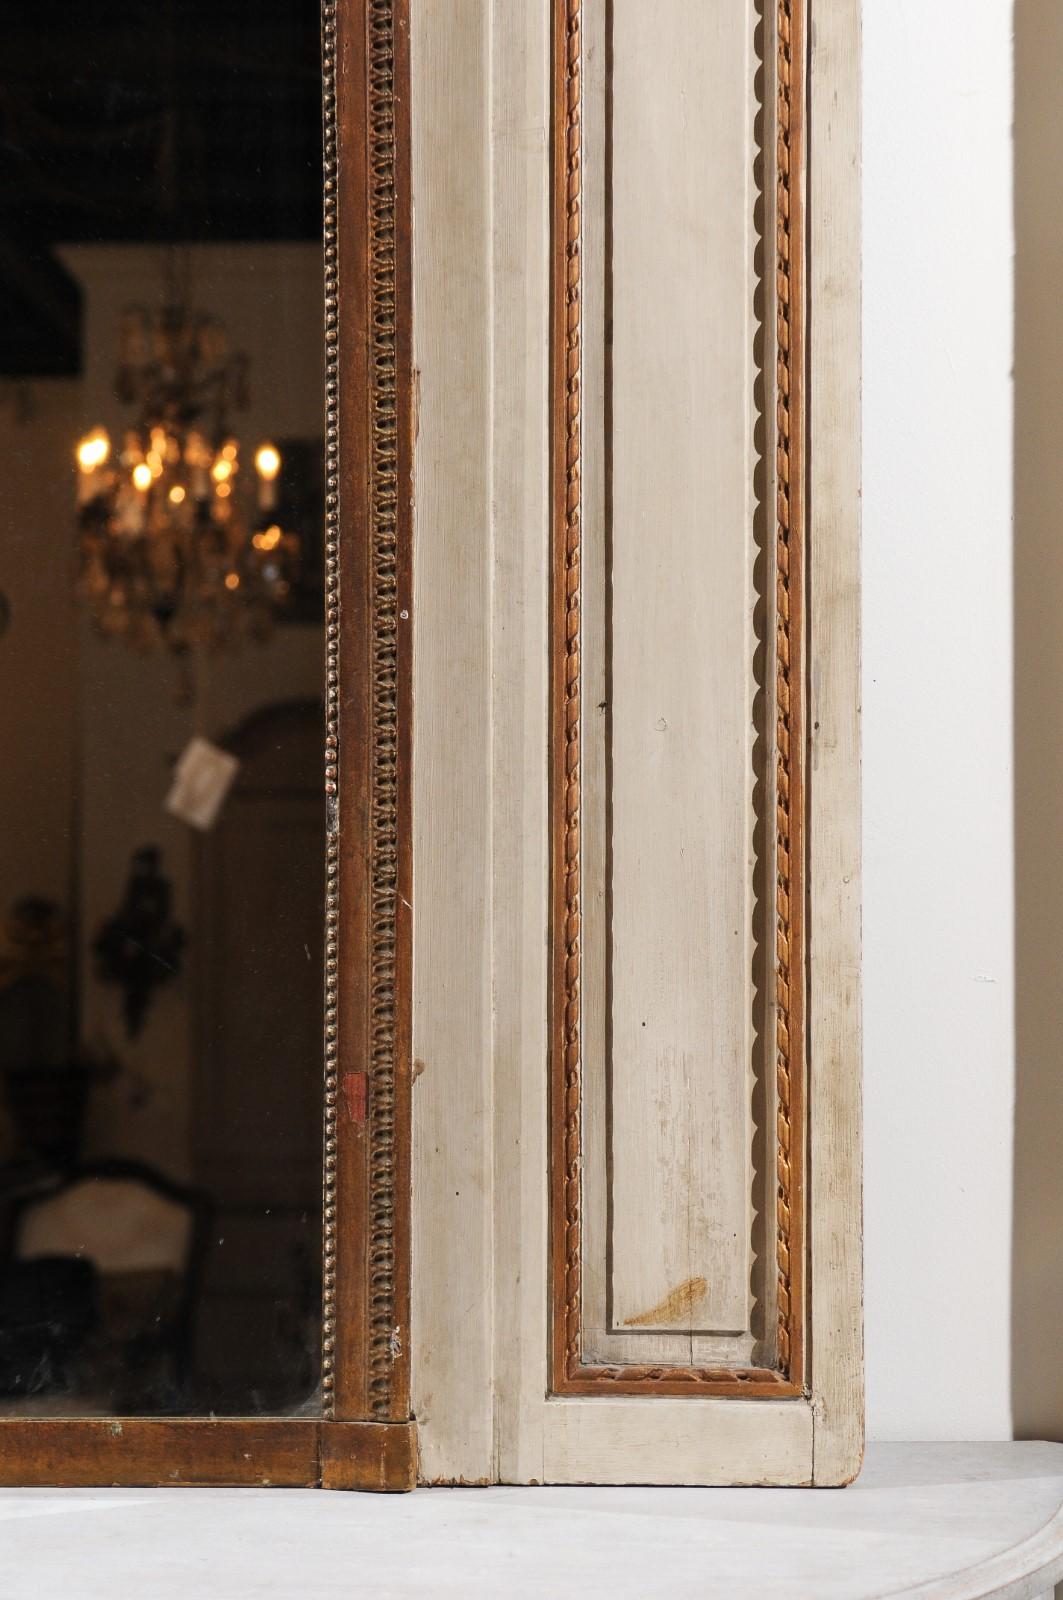 Miroir à trumeau en bois peint de style Louis XVI, datant du milieu du XIXe siècle, avec des instruments de musique. Né à Paris sous le règne de l'empereur Napoléon III, ce miroir à trumeau peint présente les caractéristiques stylistiques de